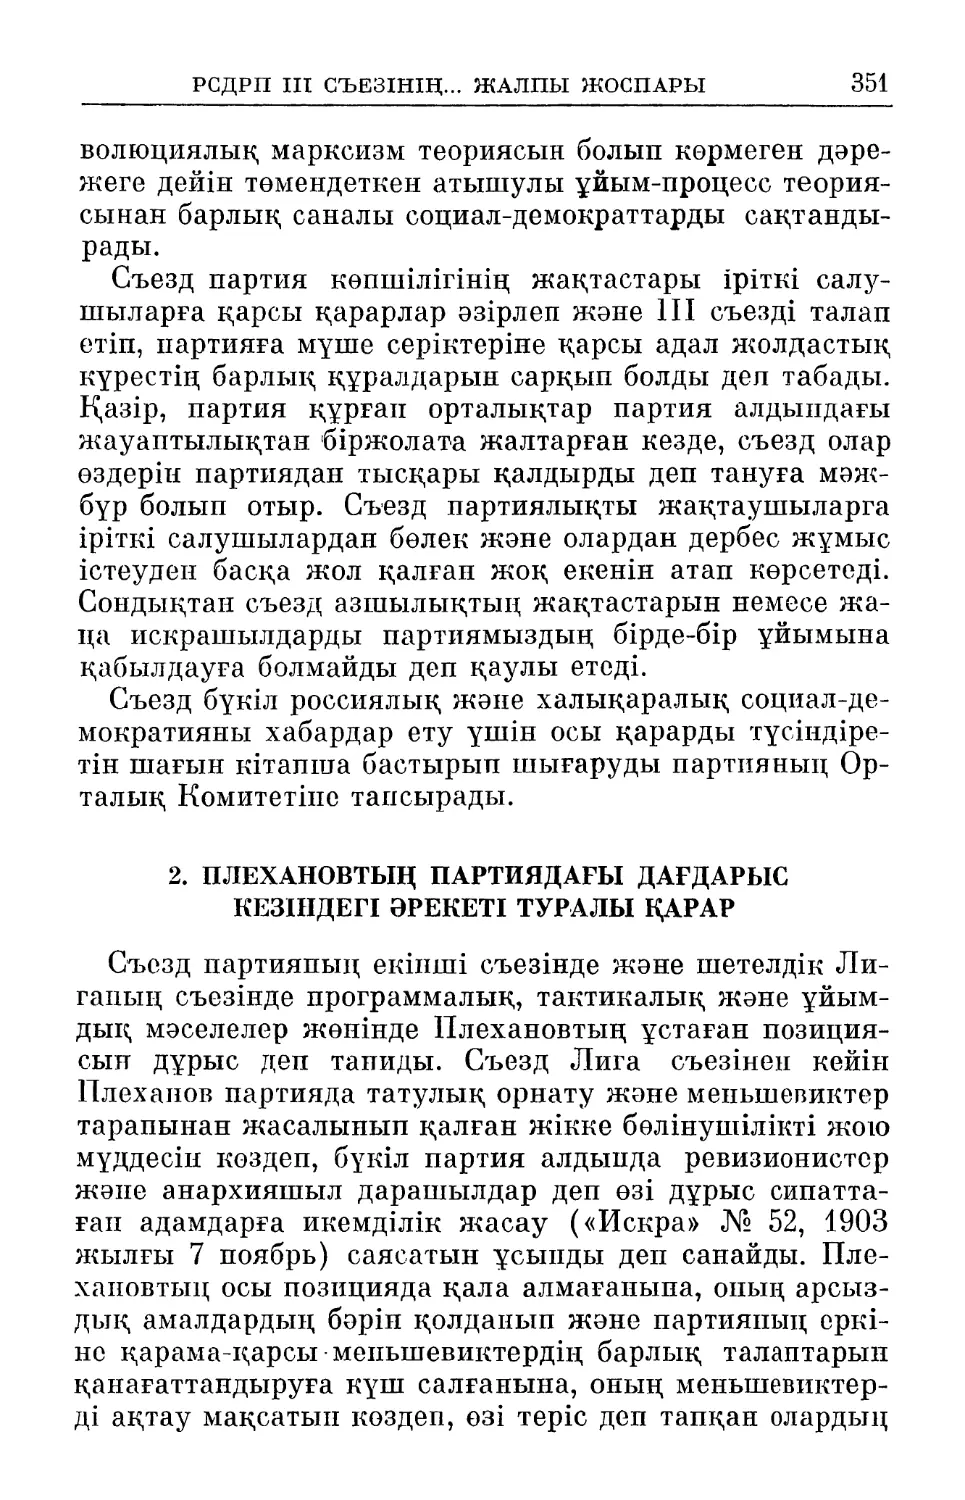 2. Плехановтың партиядагы дағдарыс кезіндегі әрекеті туралы қарар